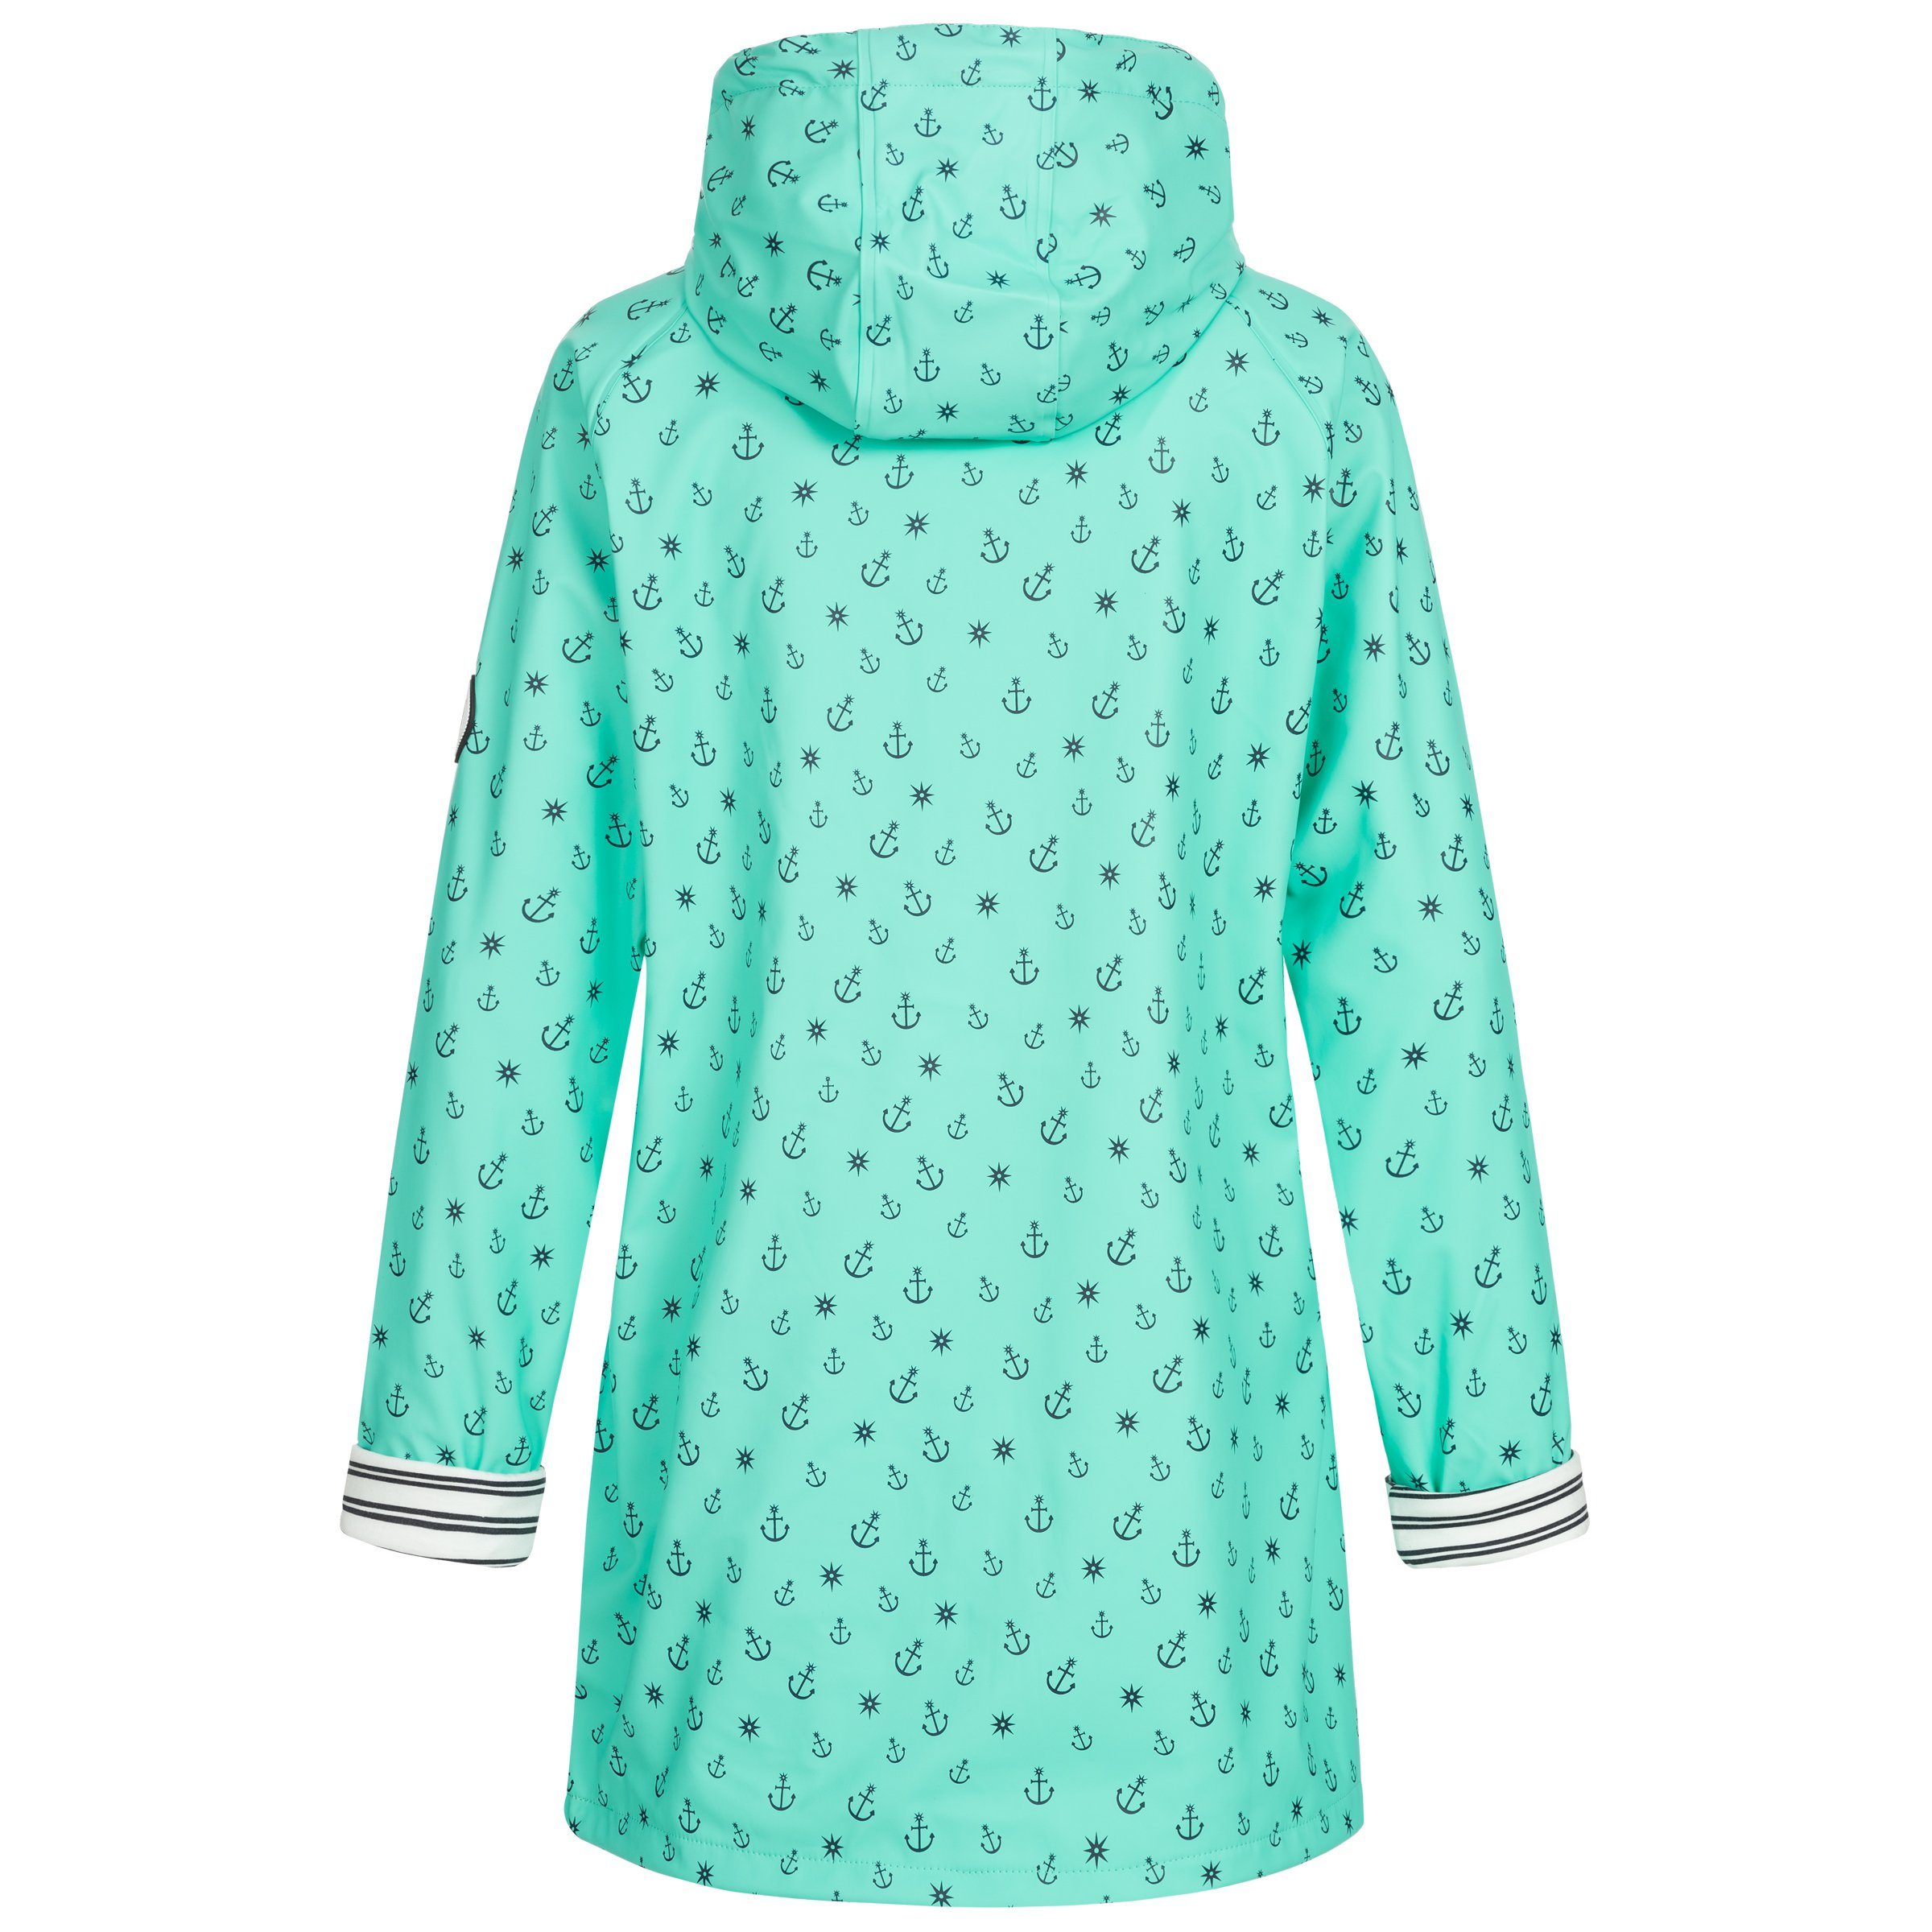 Active Großen erhältlich DEPROC auch WOMEN Regenjacke #ankerglutzauber in Friesennerz turquoise CS Größen